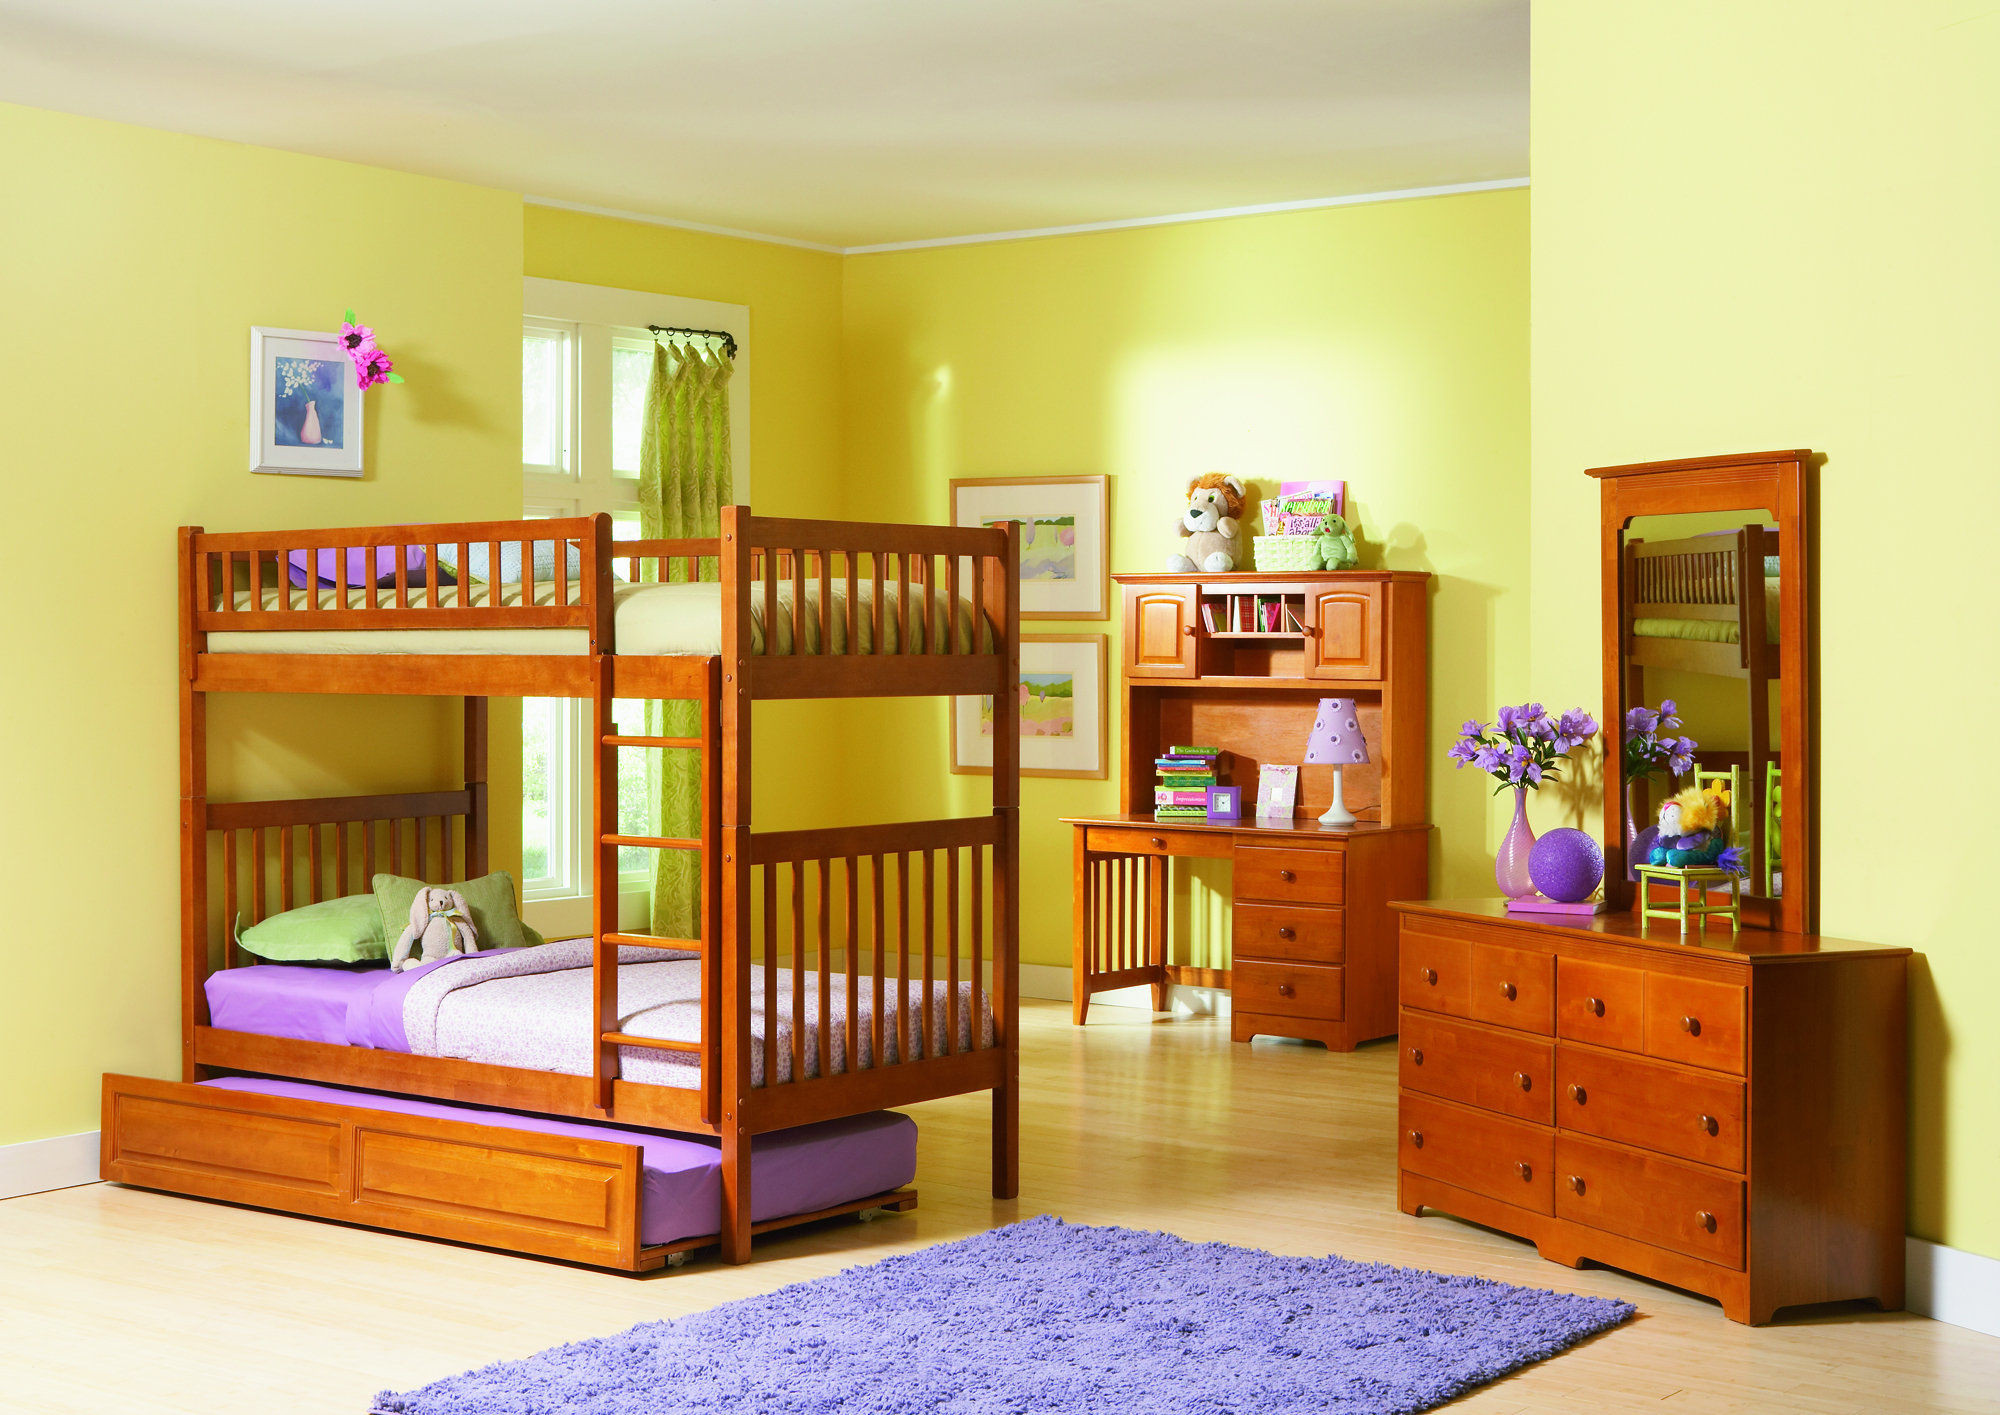 Bedroom Set For Kids
 30 Best Childrens Bedroom Furniture ideas 2015 16